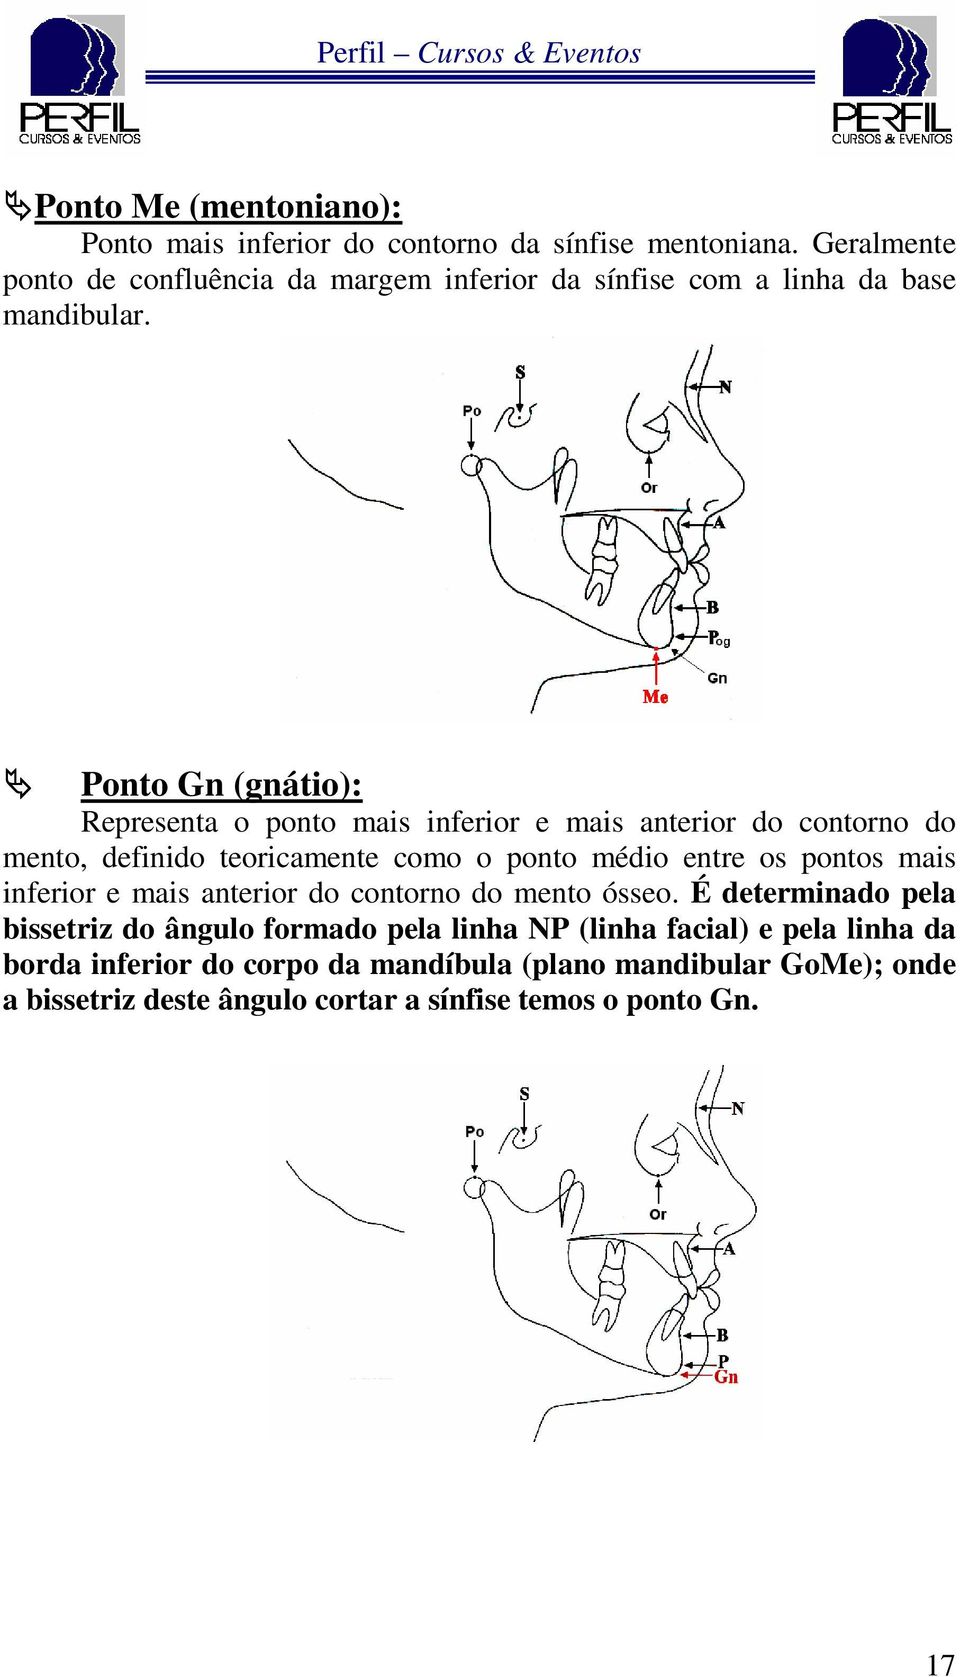 Ponto Gn (gnátio): Representa o ponto mais inferior e mais anterior do contorno do mento, definido teoricamente como o ponto médio entre os pontos